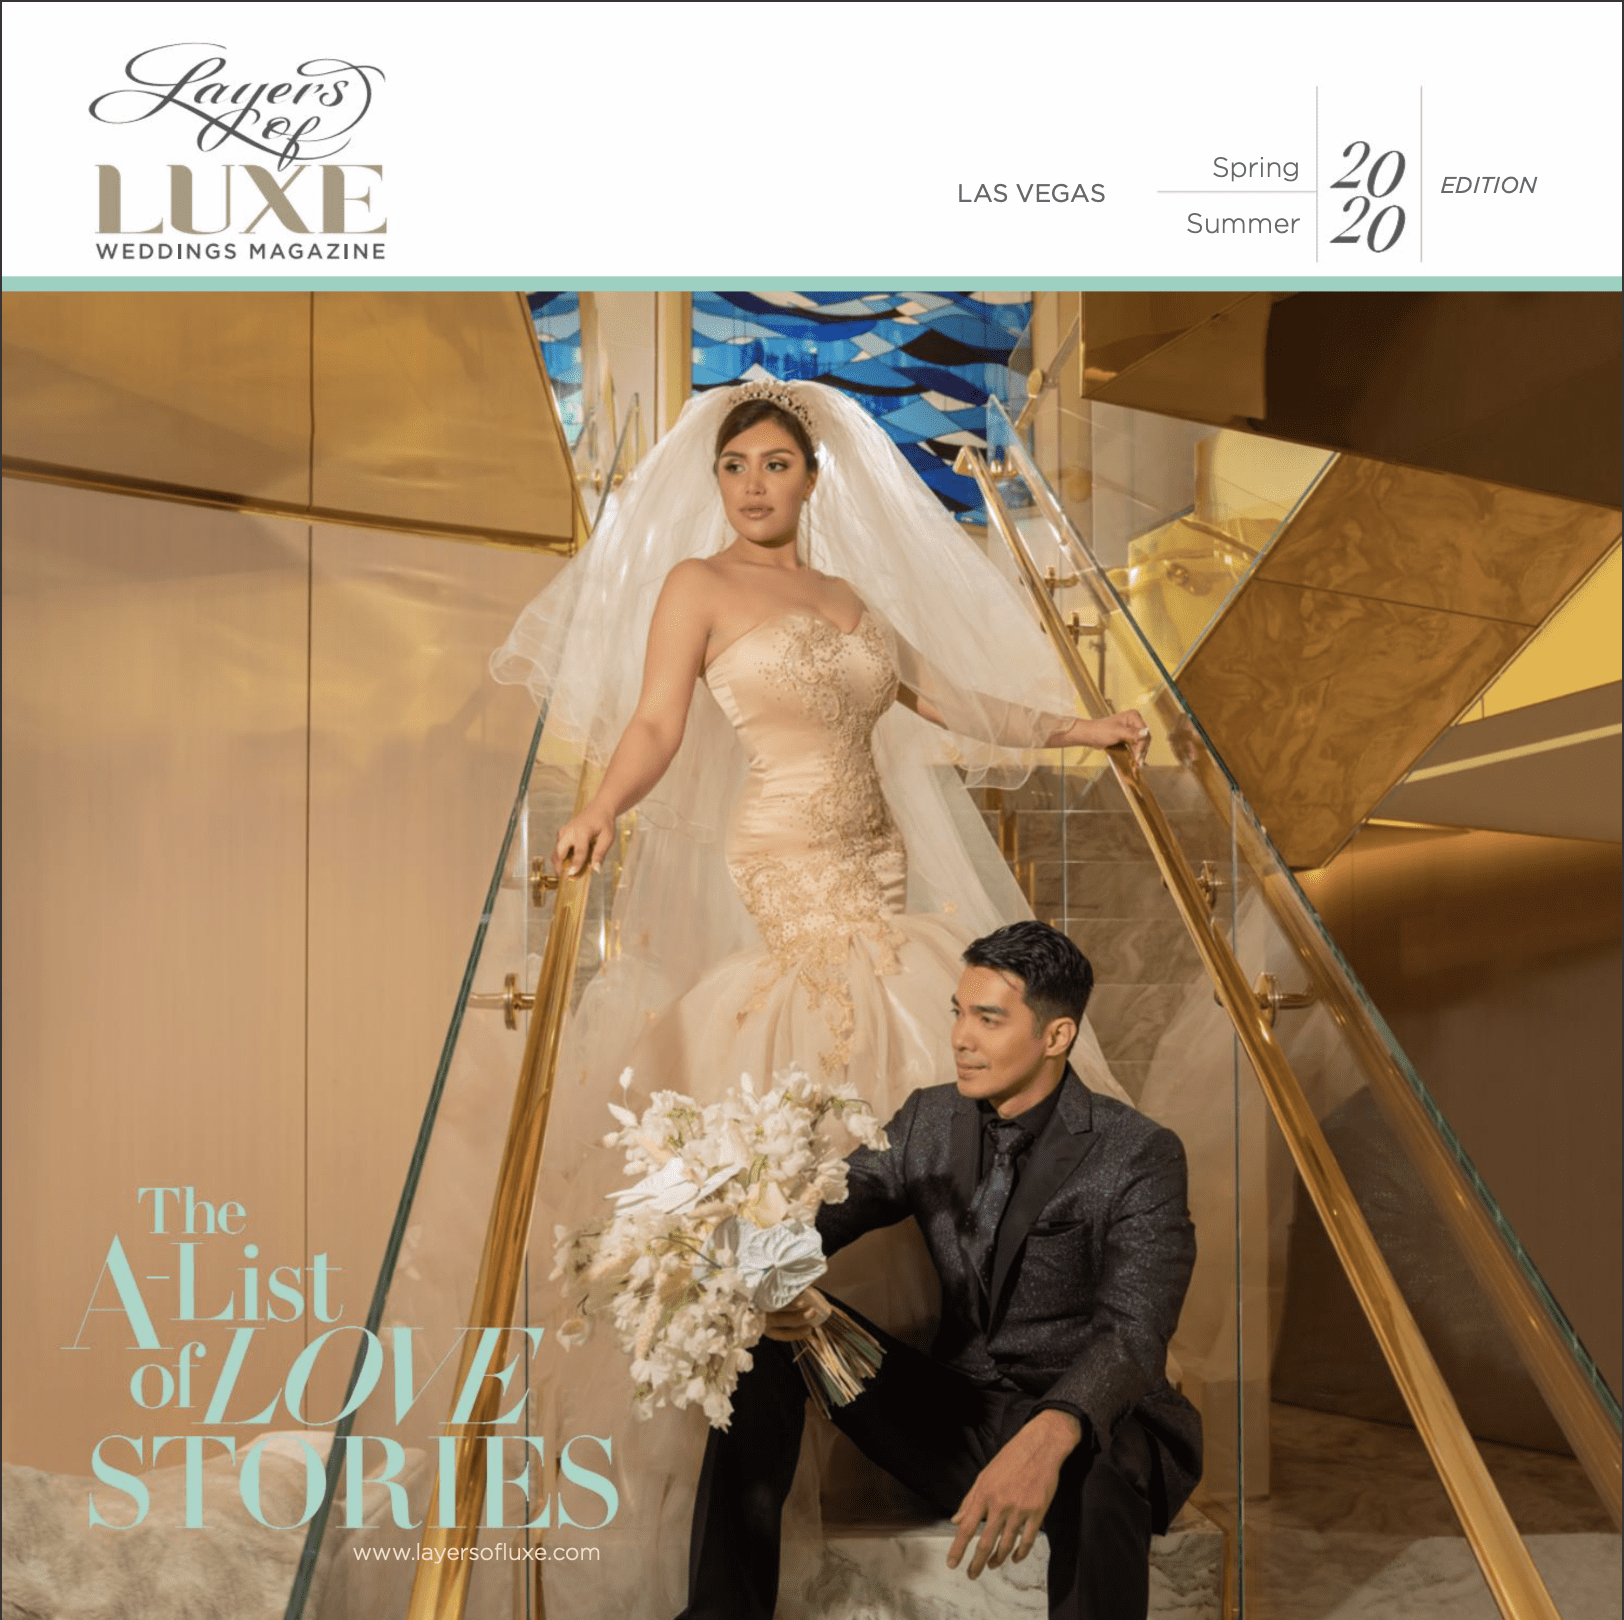 Lux wedding magazine